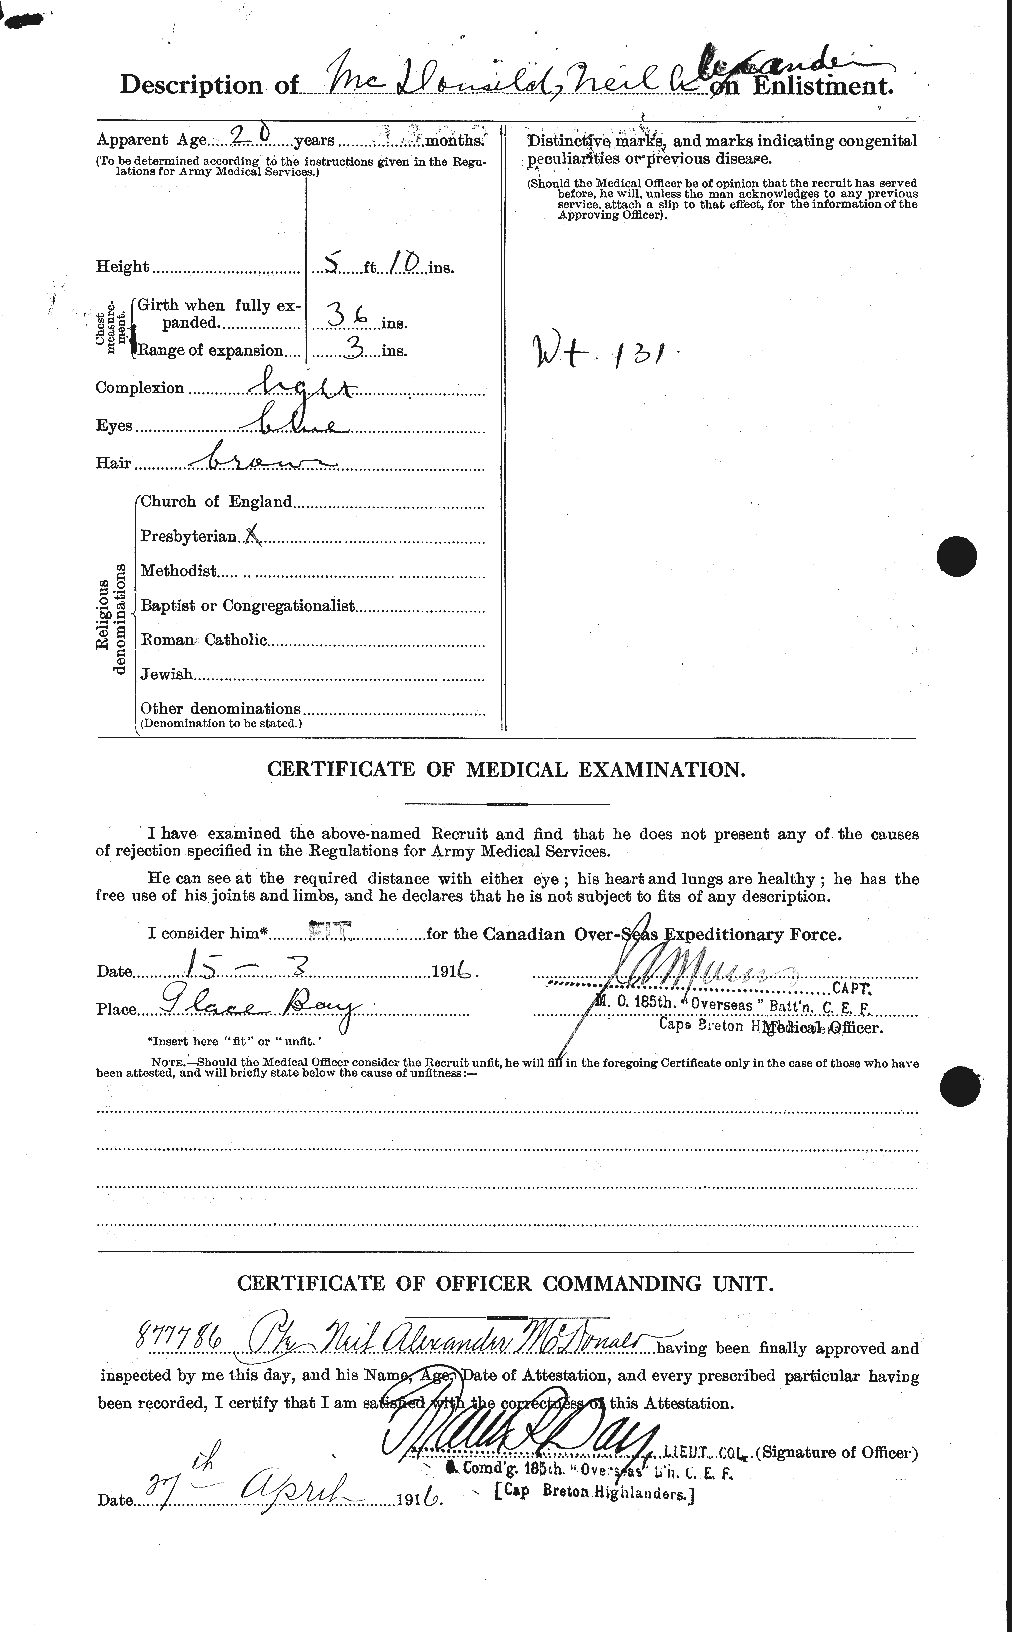 Dossiers du Personnel de la Première Guerre mondiale - CEC 524521b